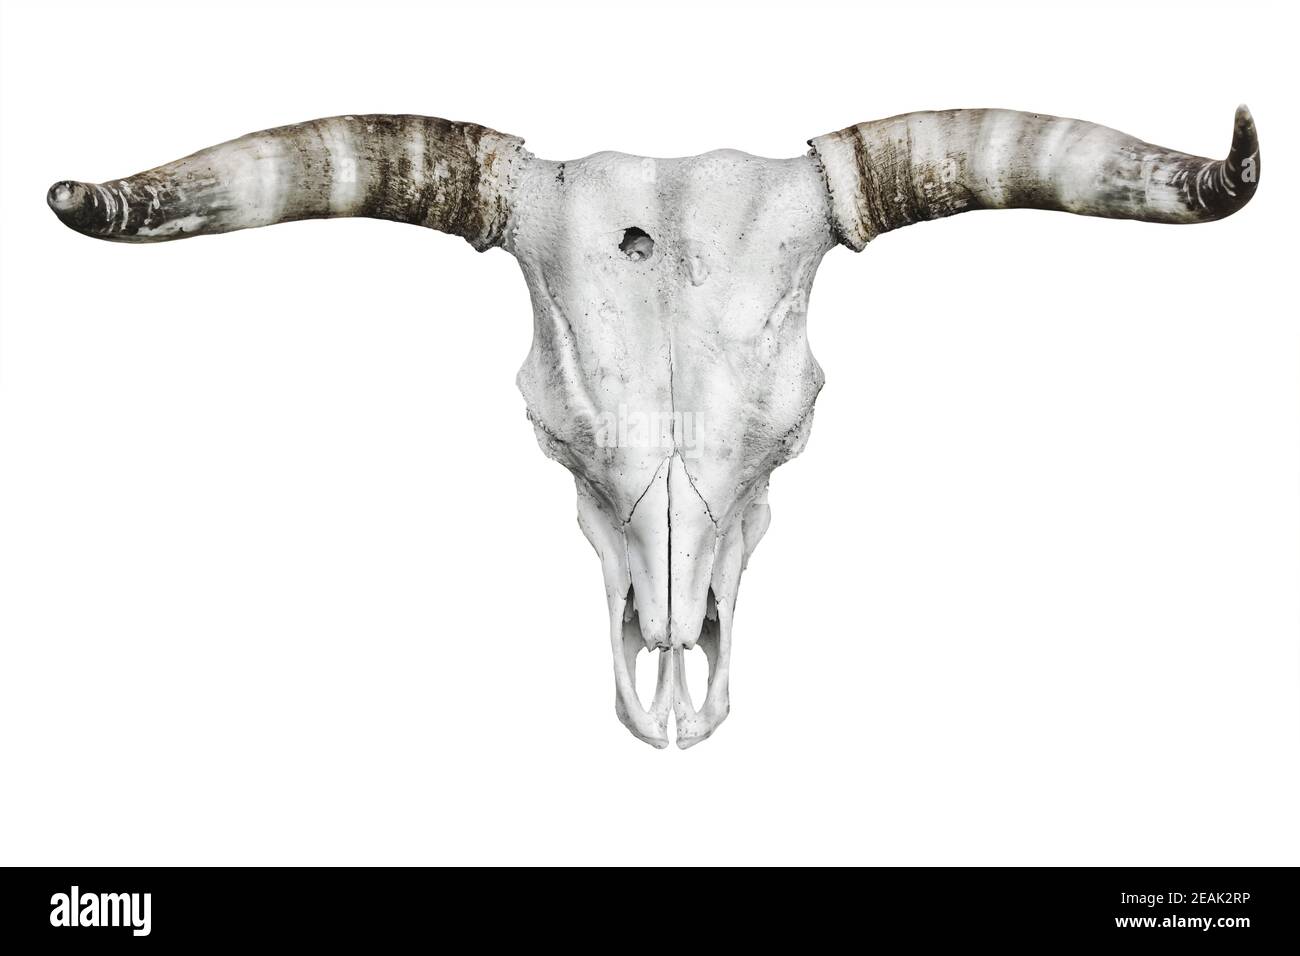 Bull skull over white Stock Photo